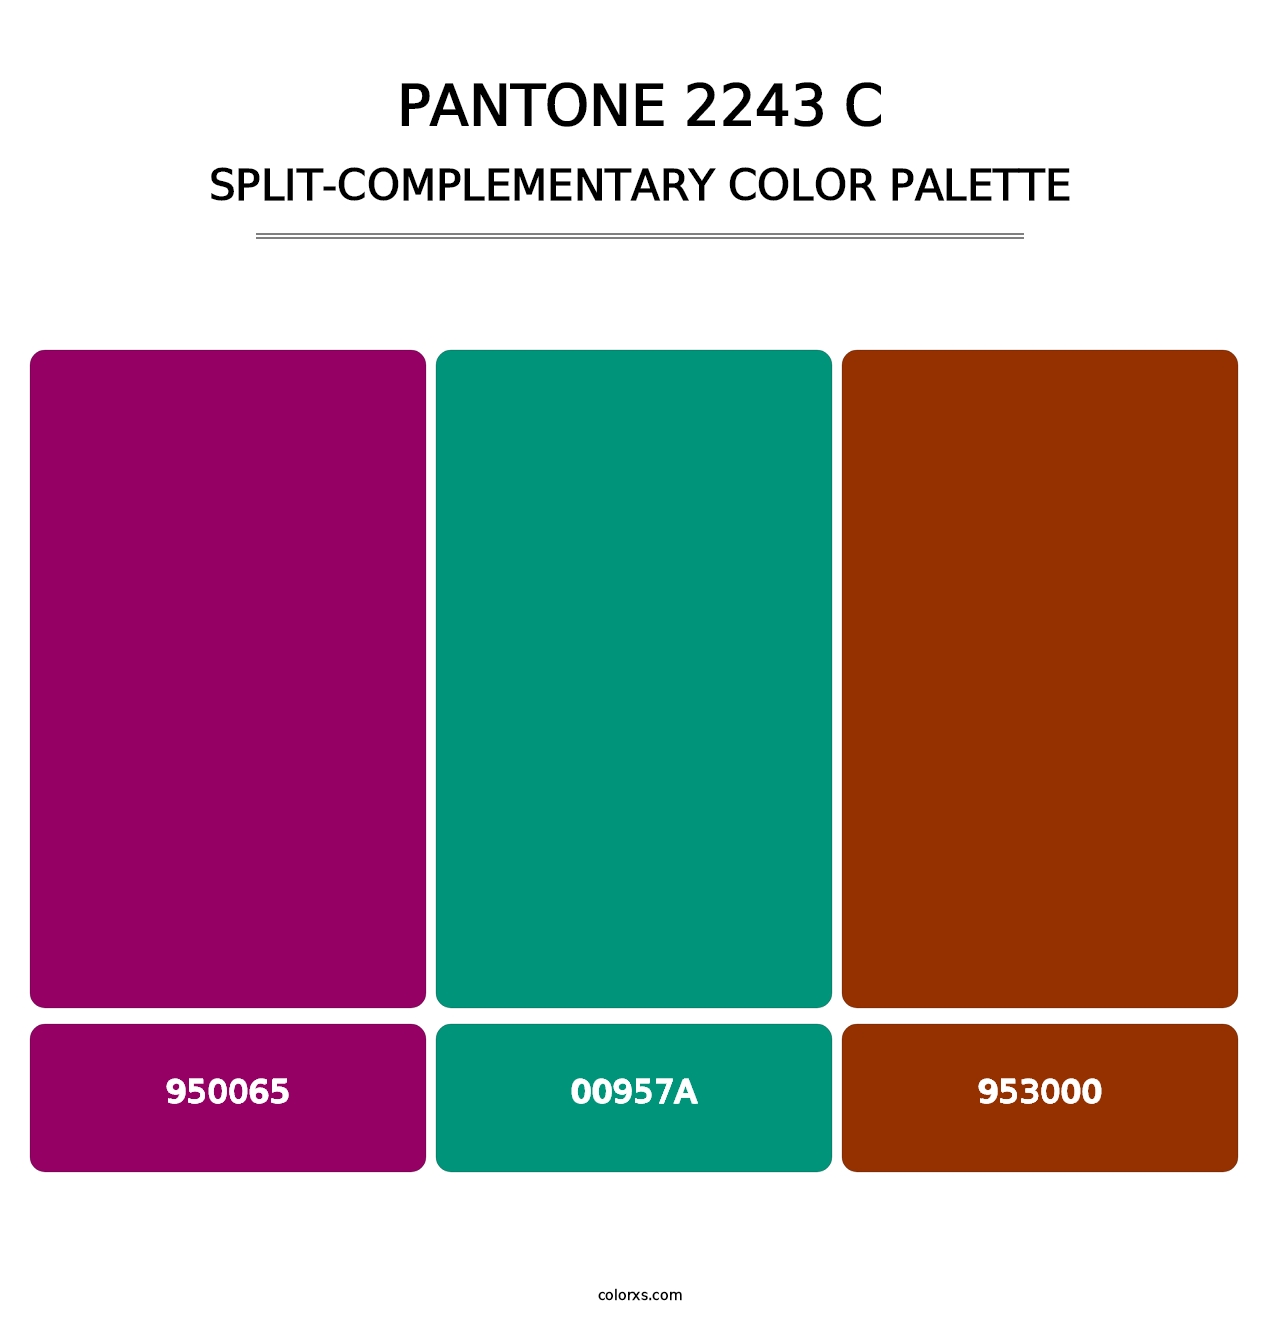 PANTONE 2243 C - Split-Complementary Color Palette